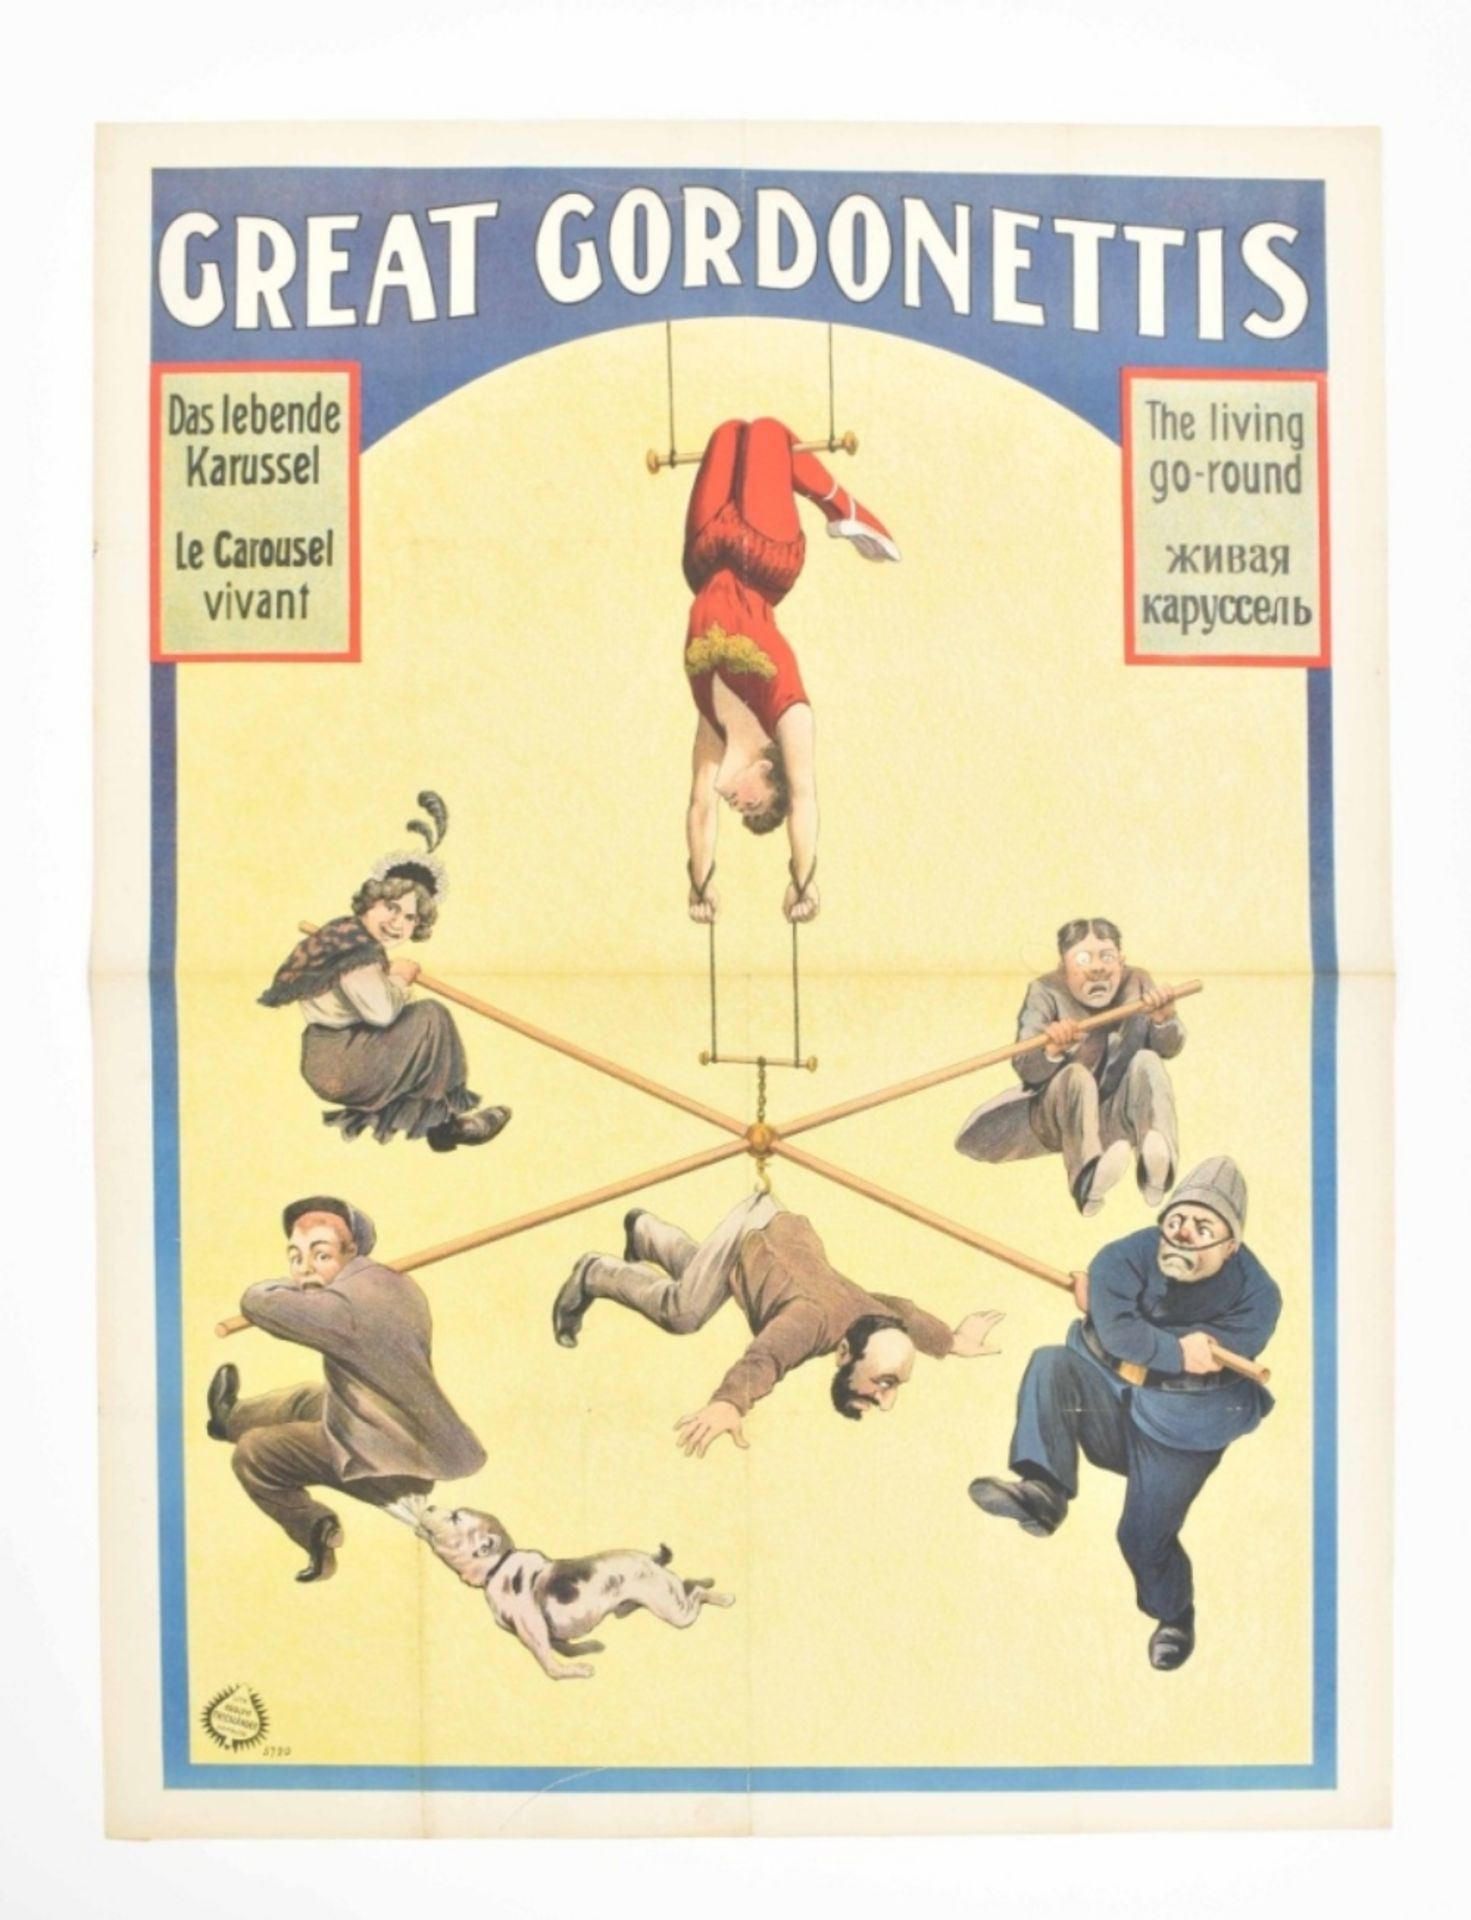 [Acrobatics] [Trapeze] Great Gordonettis Das lebende Karussel [...]. Friedländer, Hamburg 1912